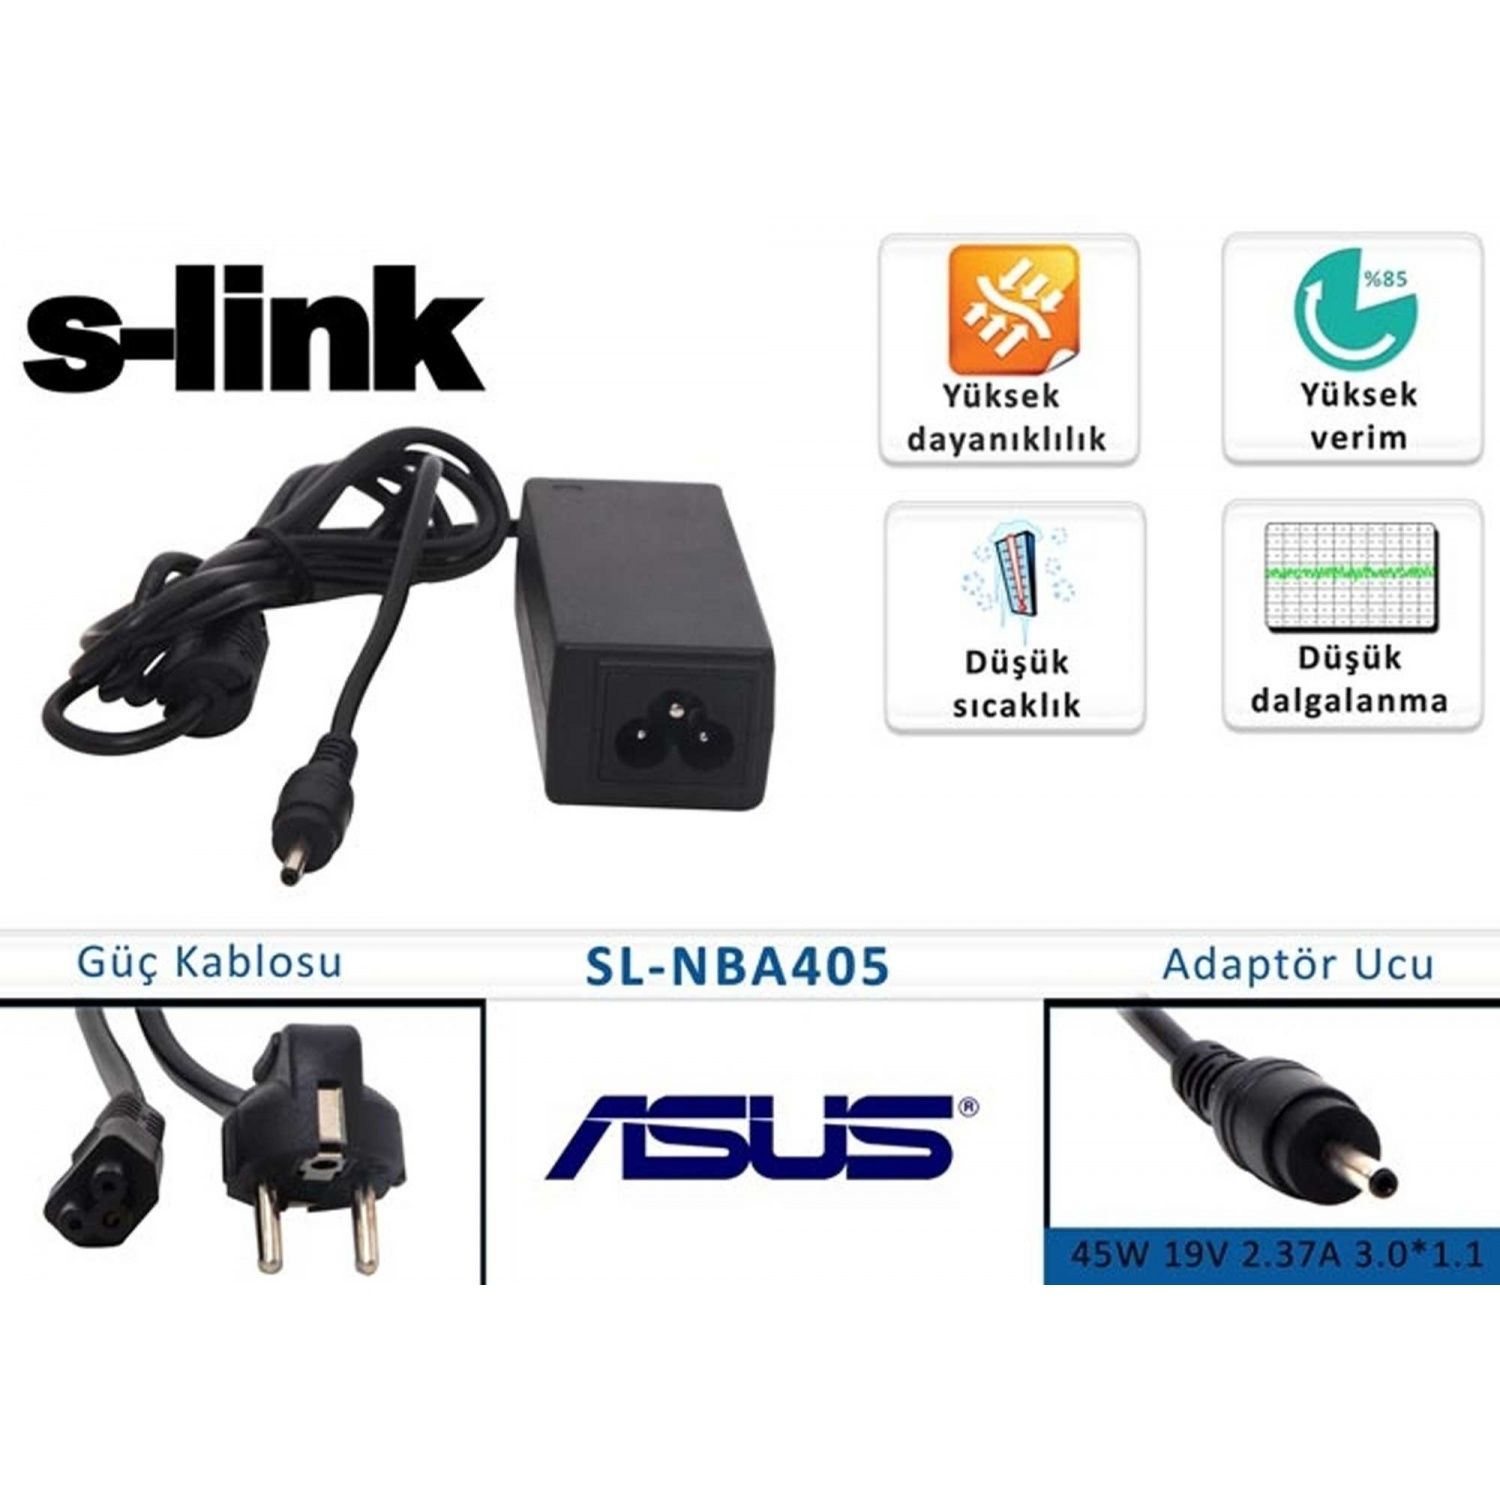 S-Link Sl-Nba405 45W 19V 2.37A 3.0-1.1 Notebook Standart Adaptör